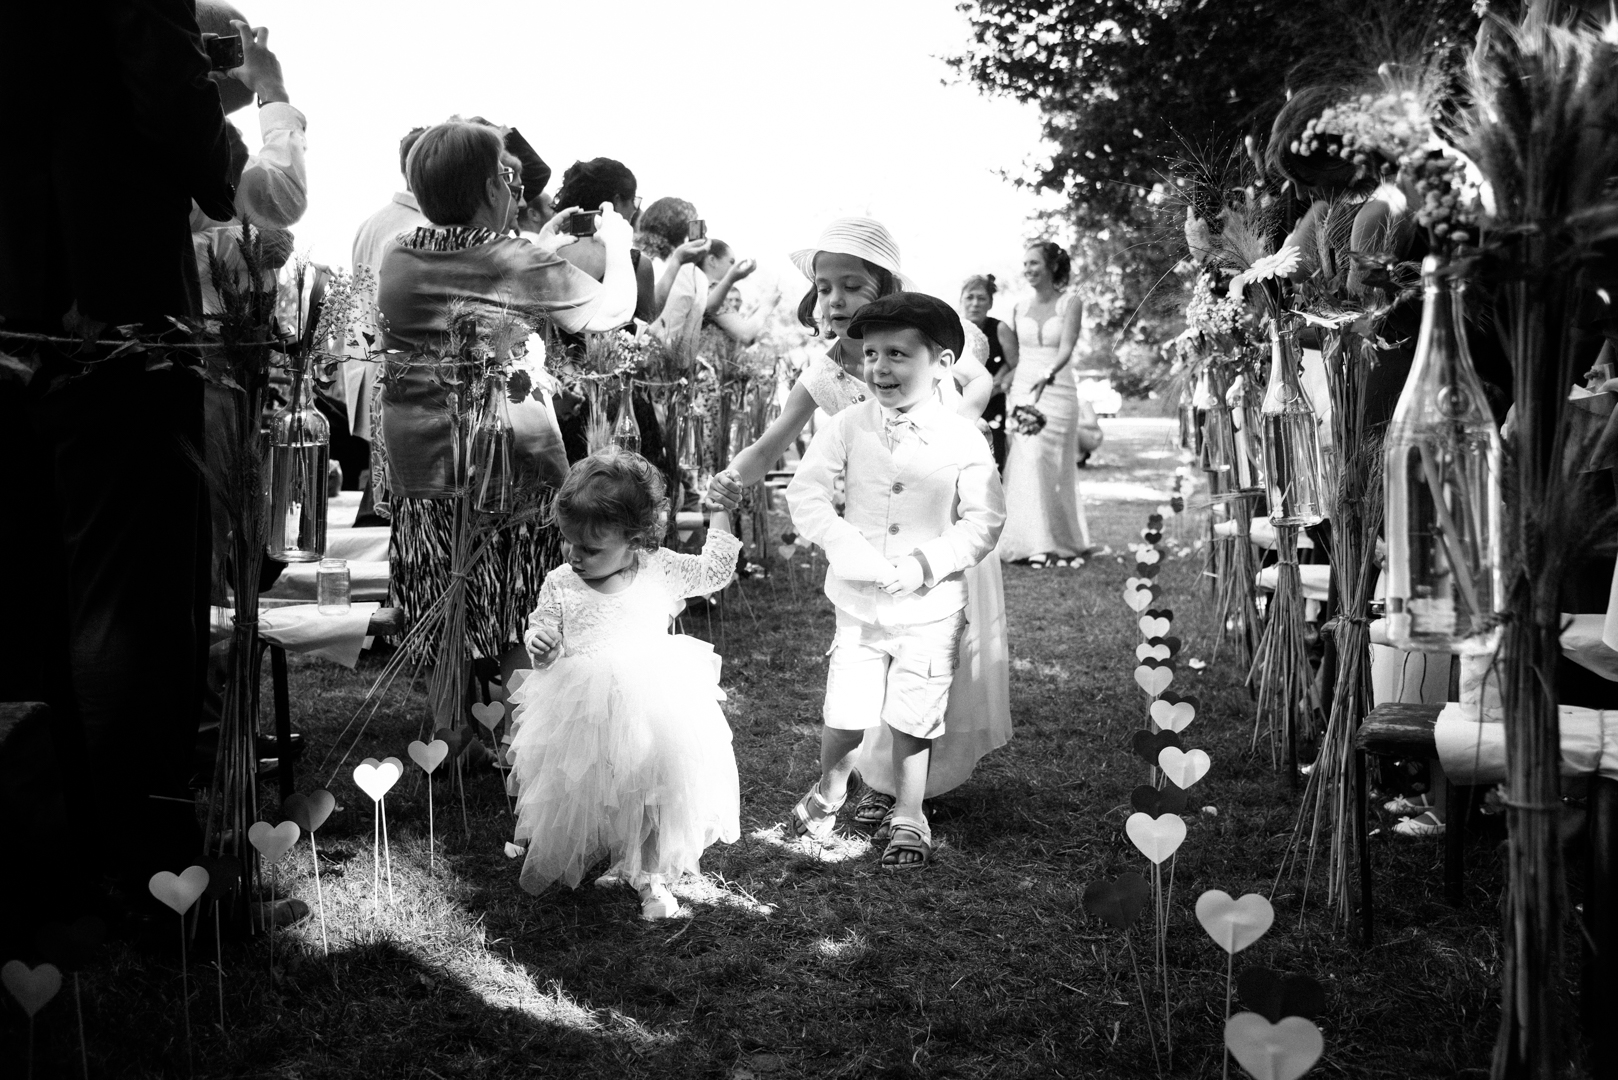 photographe de mariage rennes, bretagne-frederique jouvin photographe famille, mariage, portrait rennes, ceremonie laic